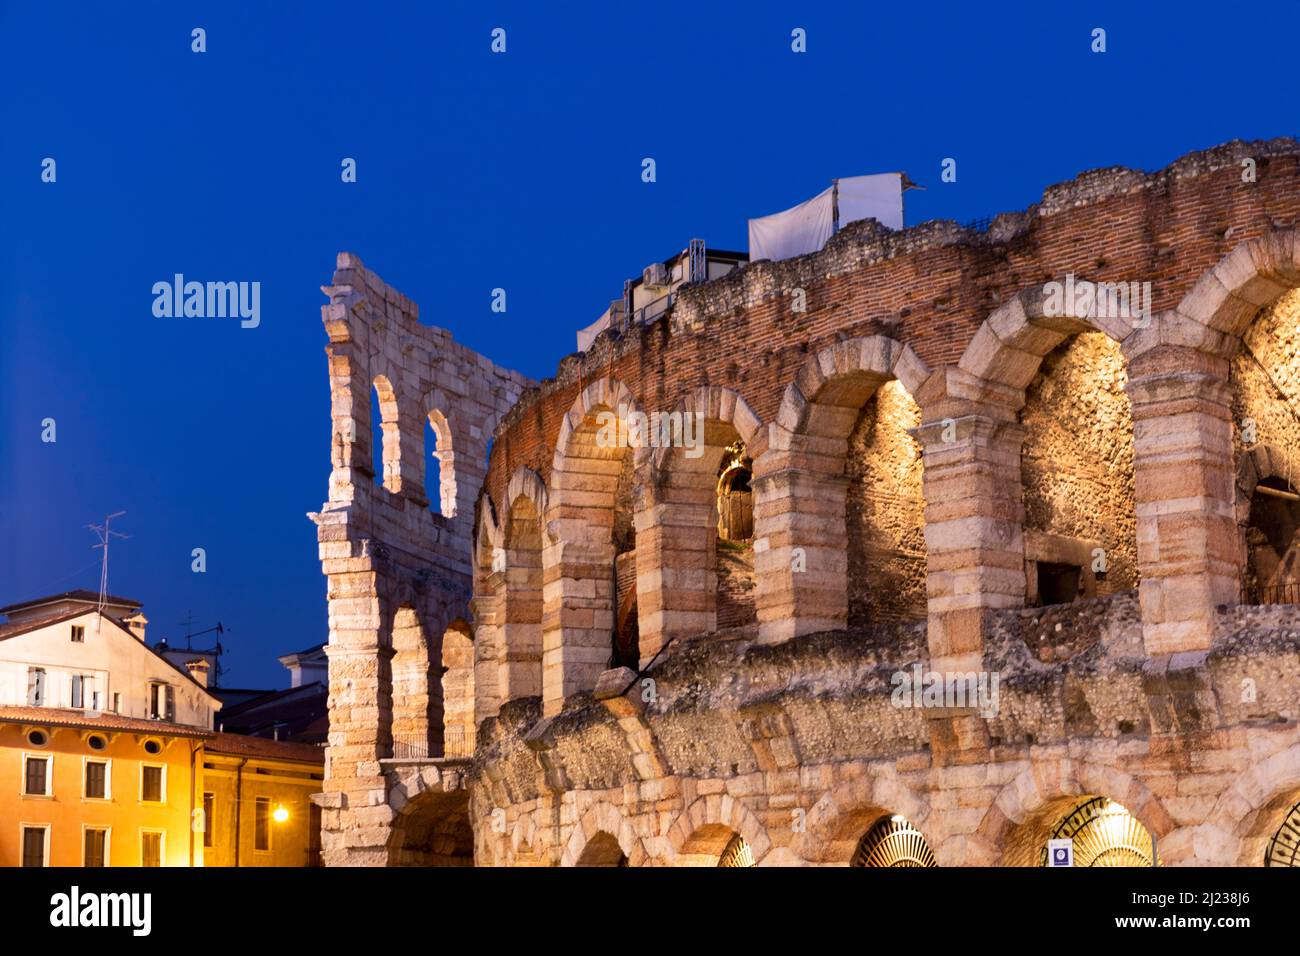 Die Arena von Verona, einst ein römisches Amphitheater, wurde in der Abenddämmerung beleuchtet Stockfoto